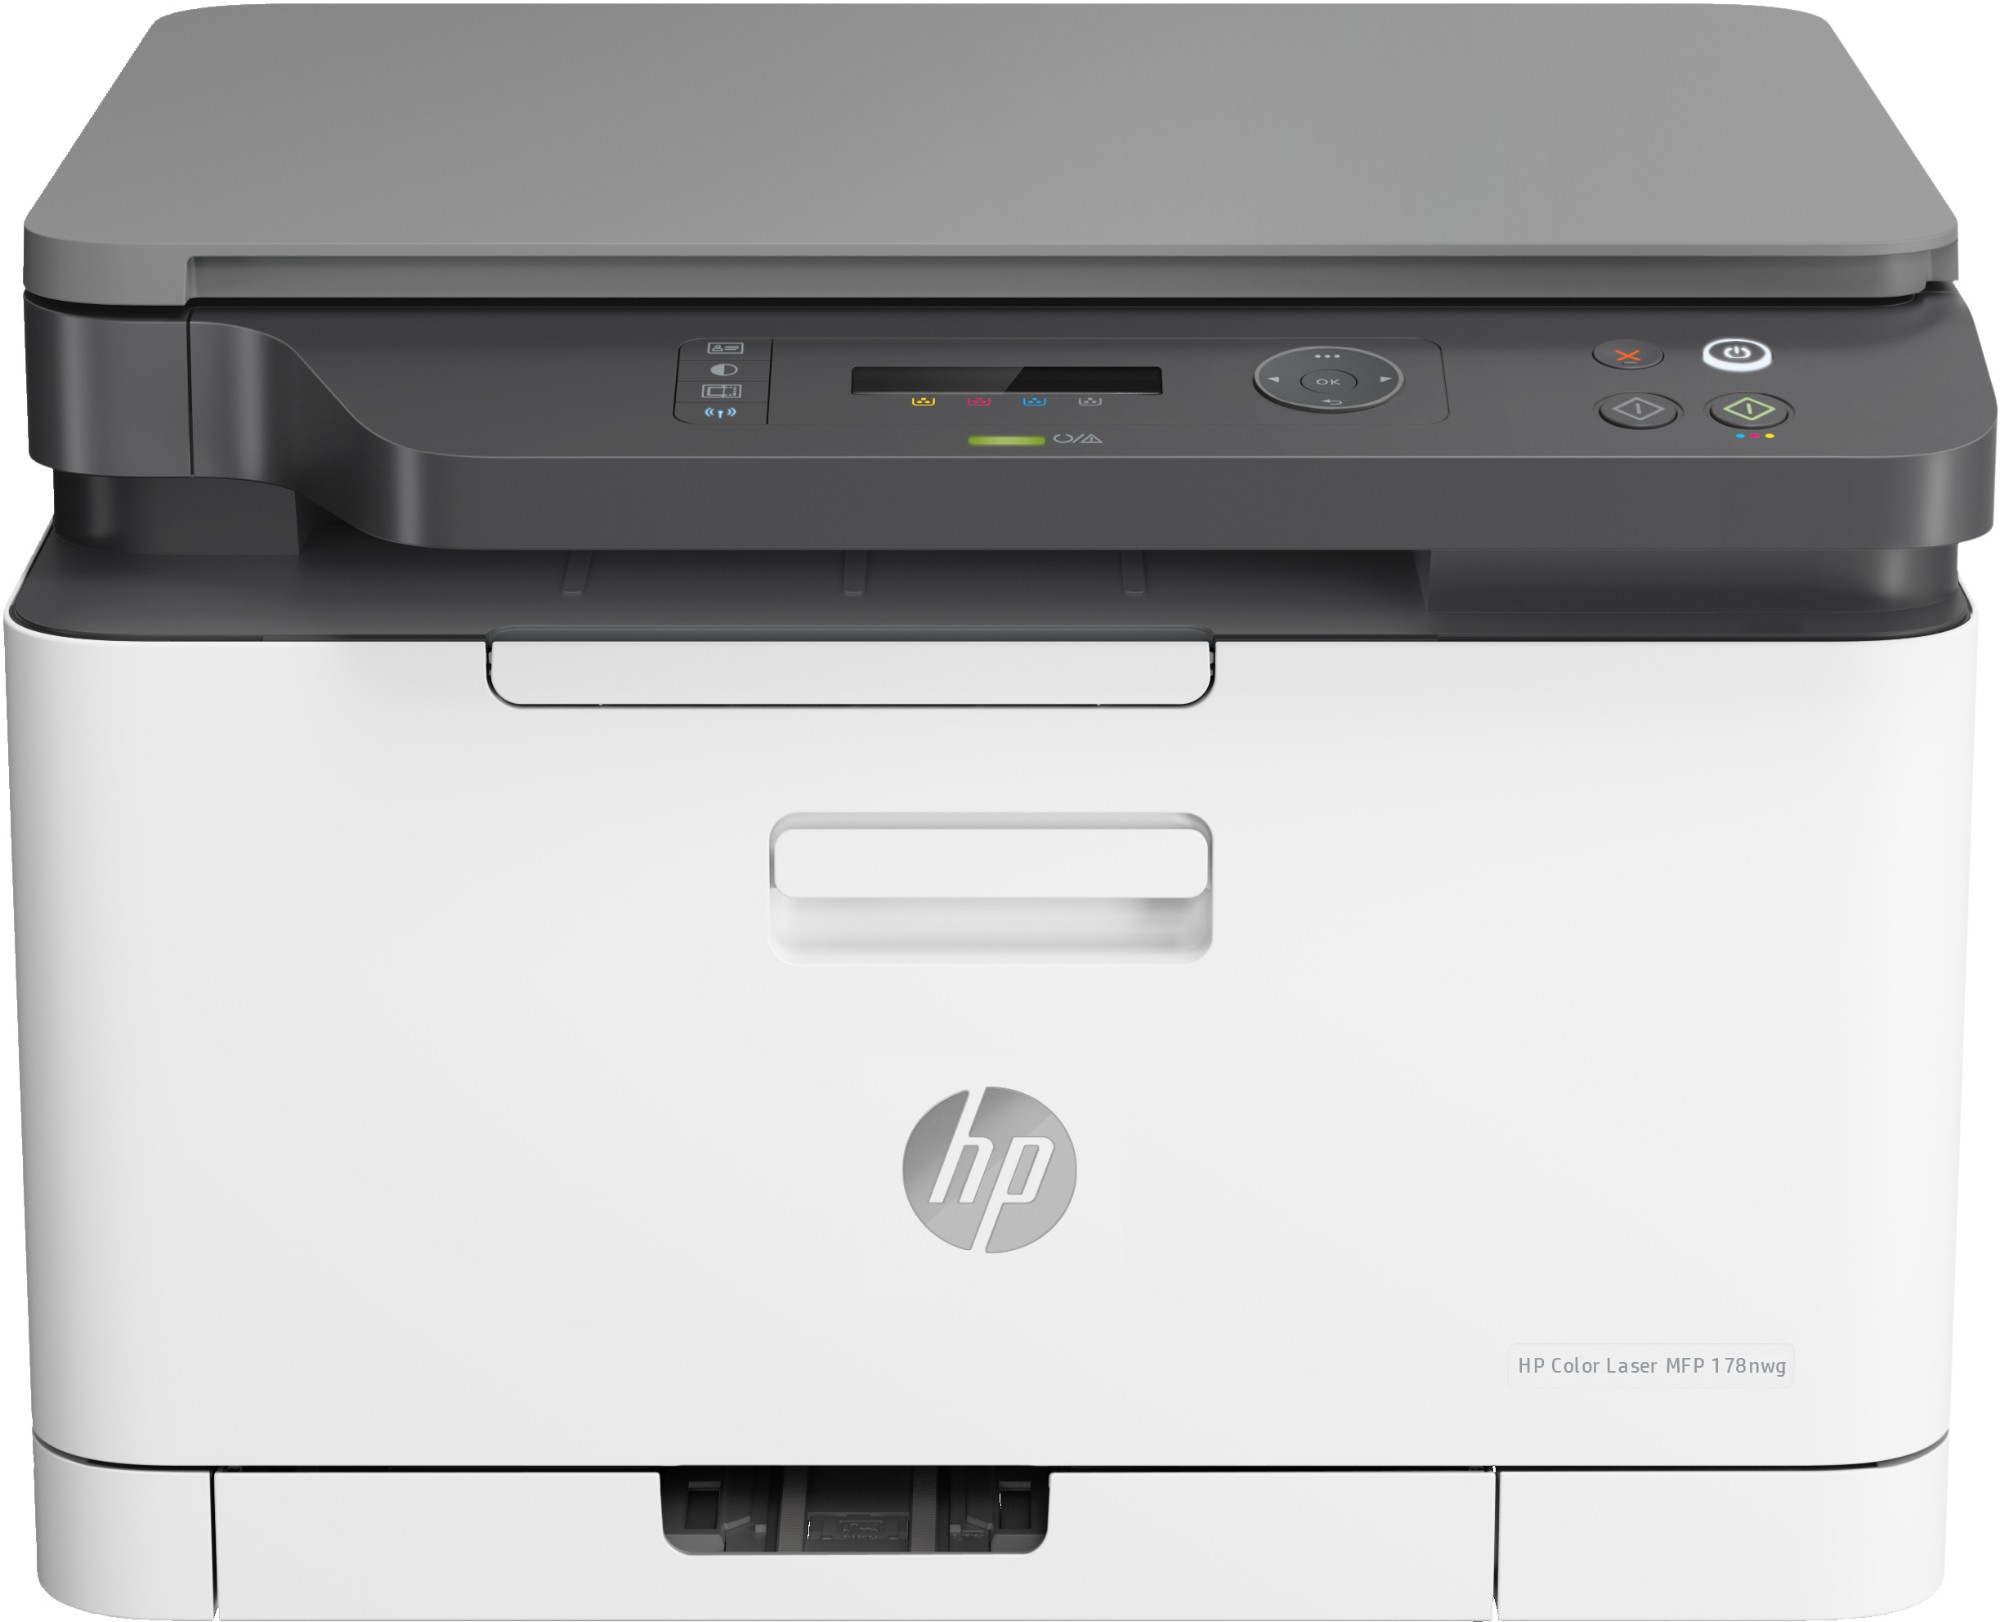 HP Color Laser MFP 178nw, Skriv ut, kopiera, skanna, Skanna till PDF